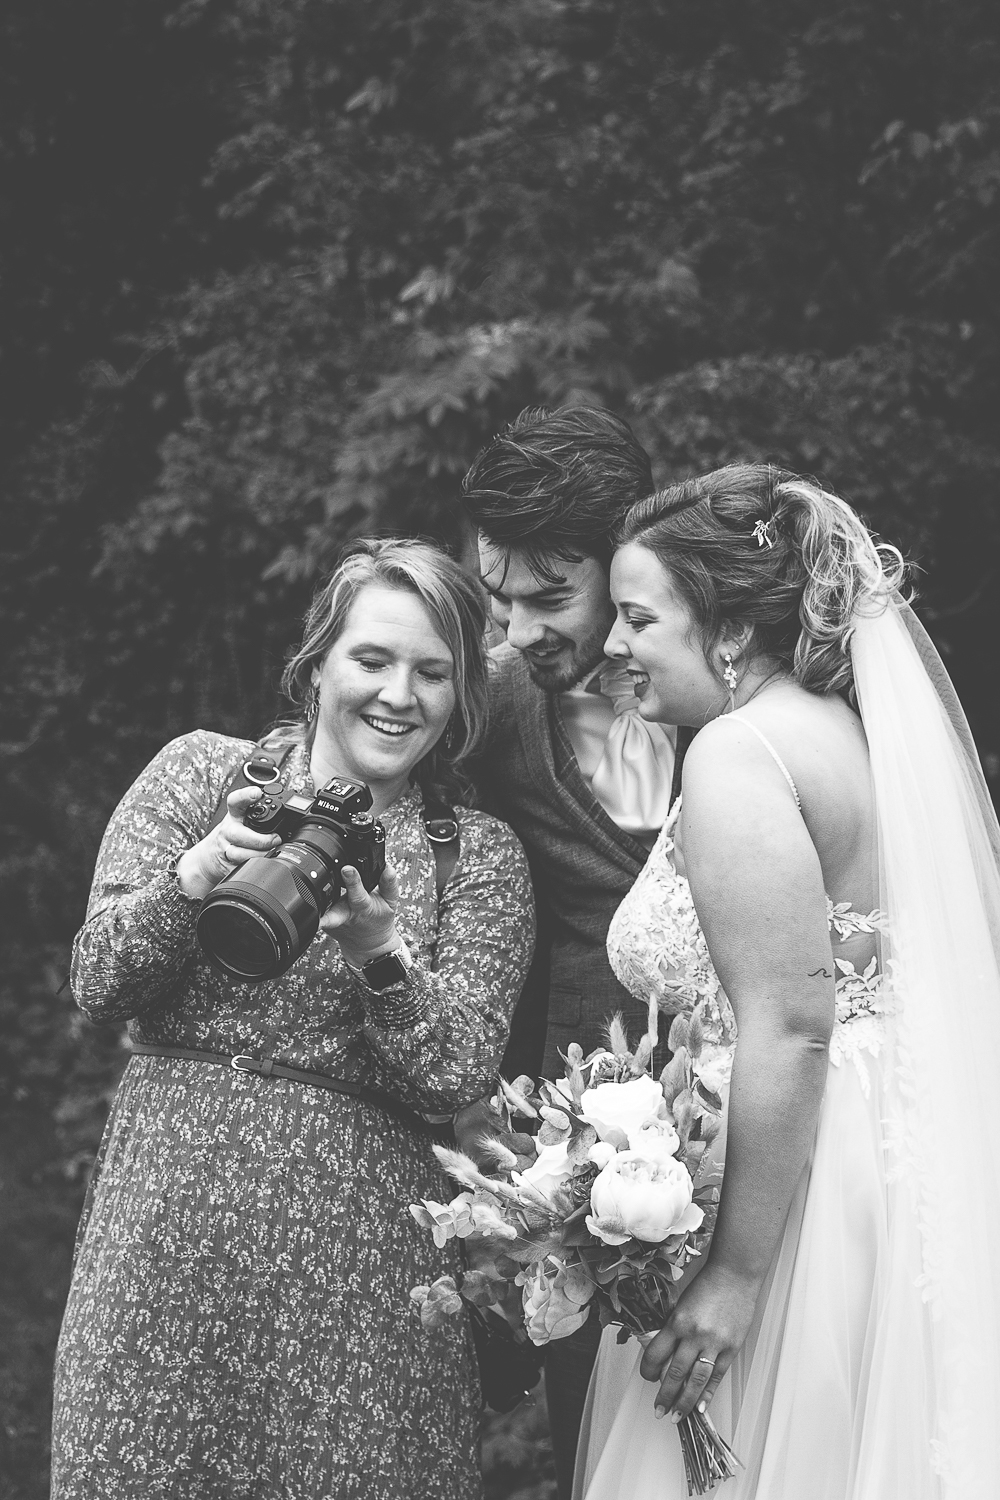 Bruidsfotograaf toon een gemaakte foto aan het bruidspaar, ze glimlachen en genieten.